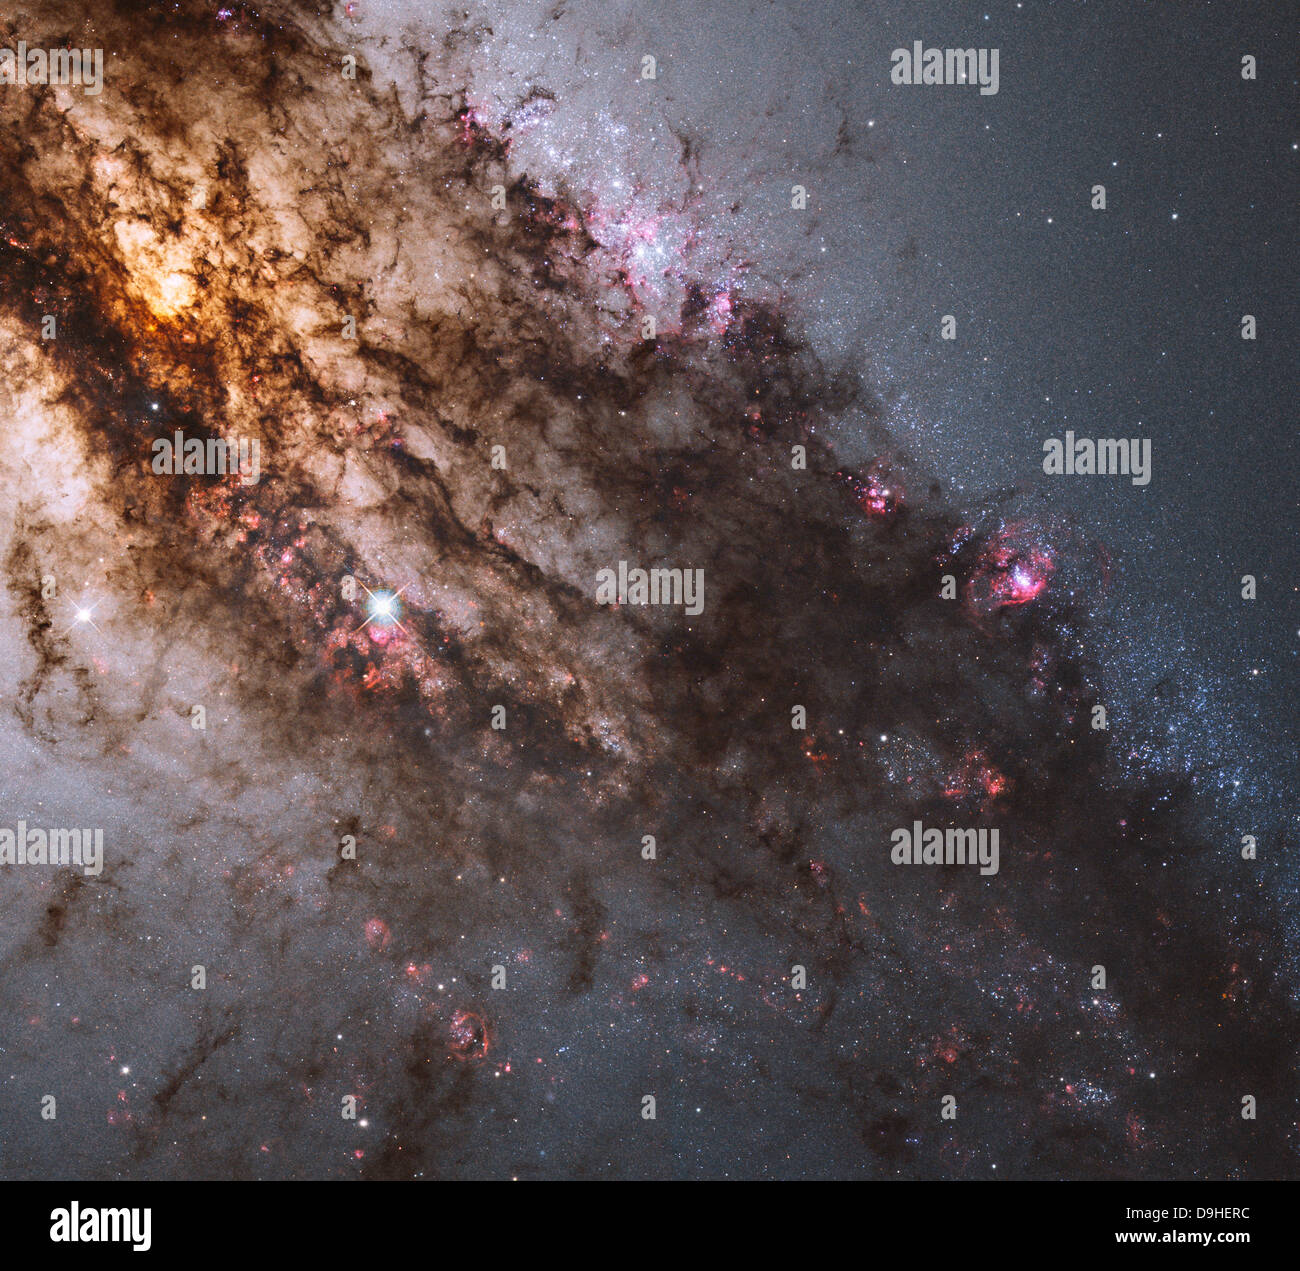 Dunkle Gassen von Staub durchkreuzen die elliptische Galaxie Centaurus A. Stockfoto